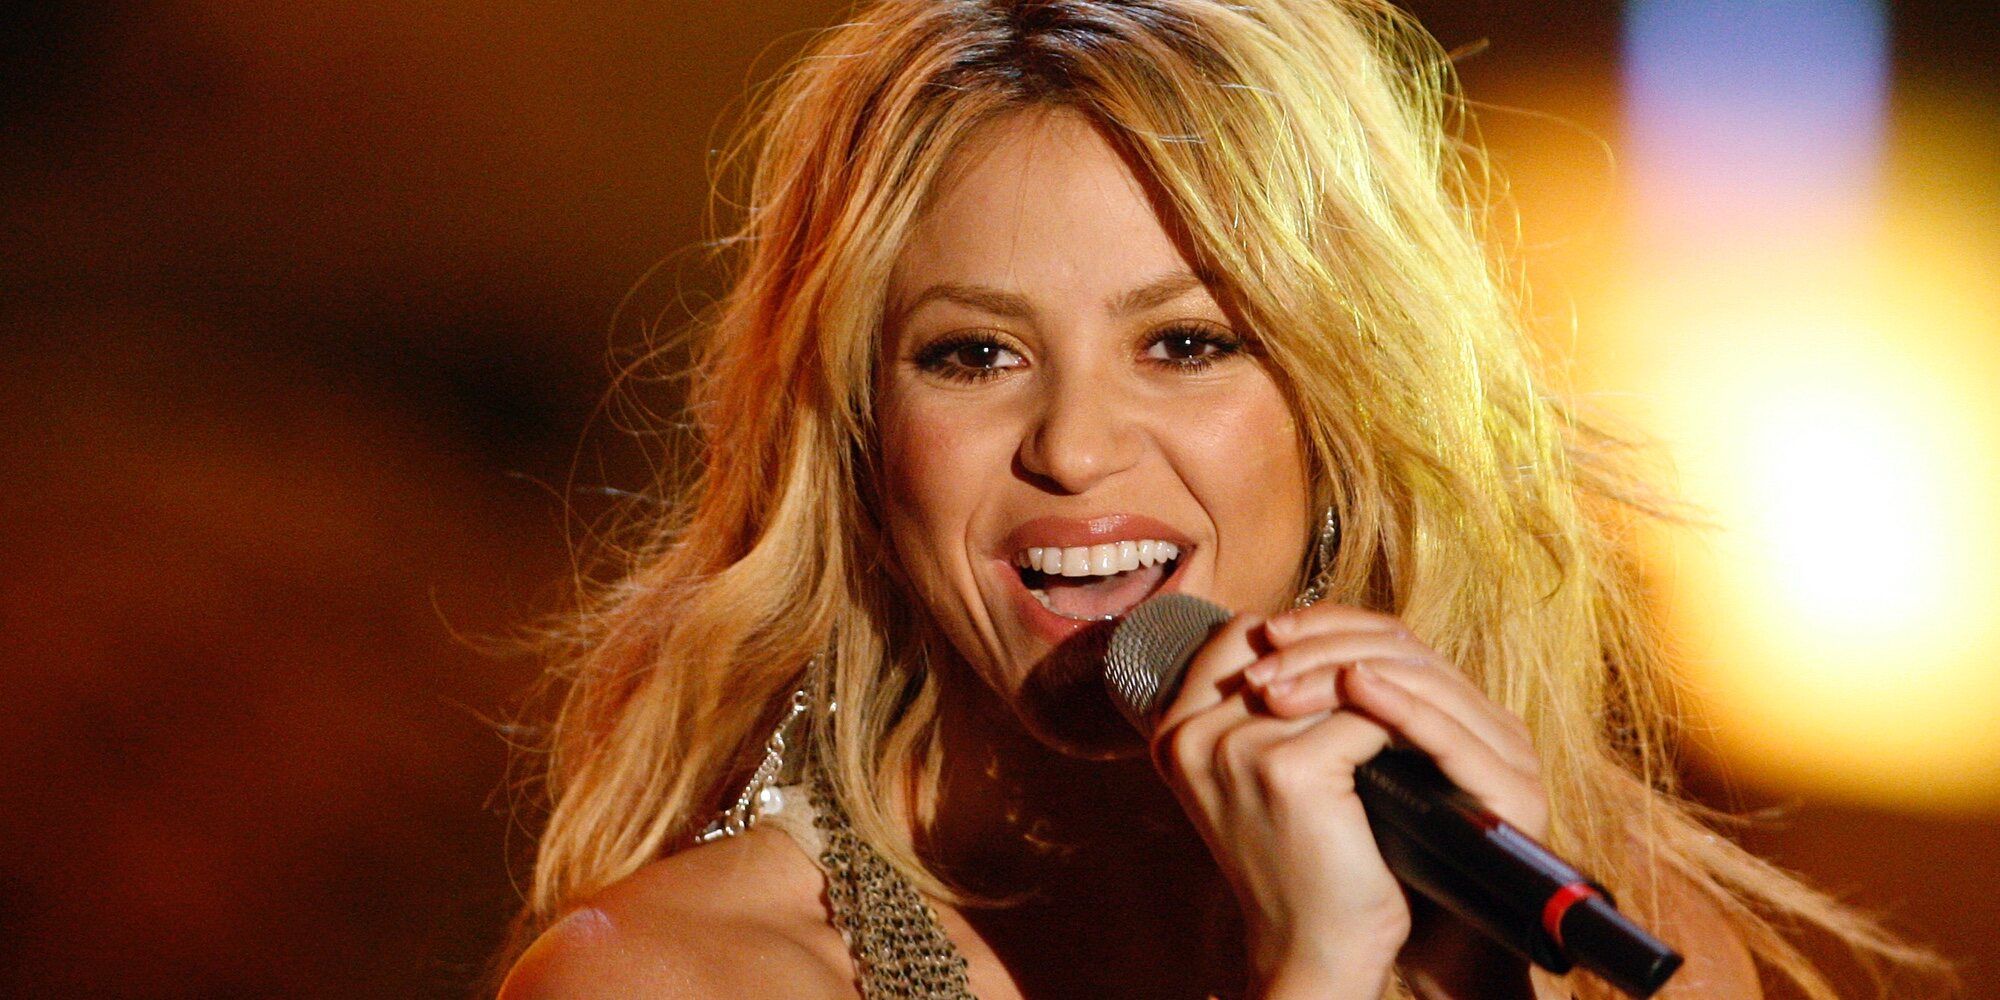 'Tú', 'Me enamoré', 'Día de enero'... Todas las canciones que Shakira dedicó a sus parejas entre el amor y el despecho